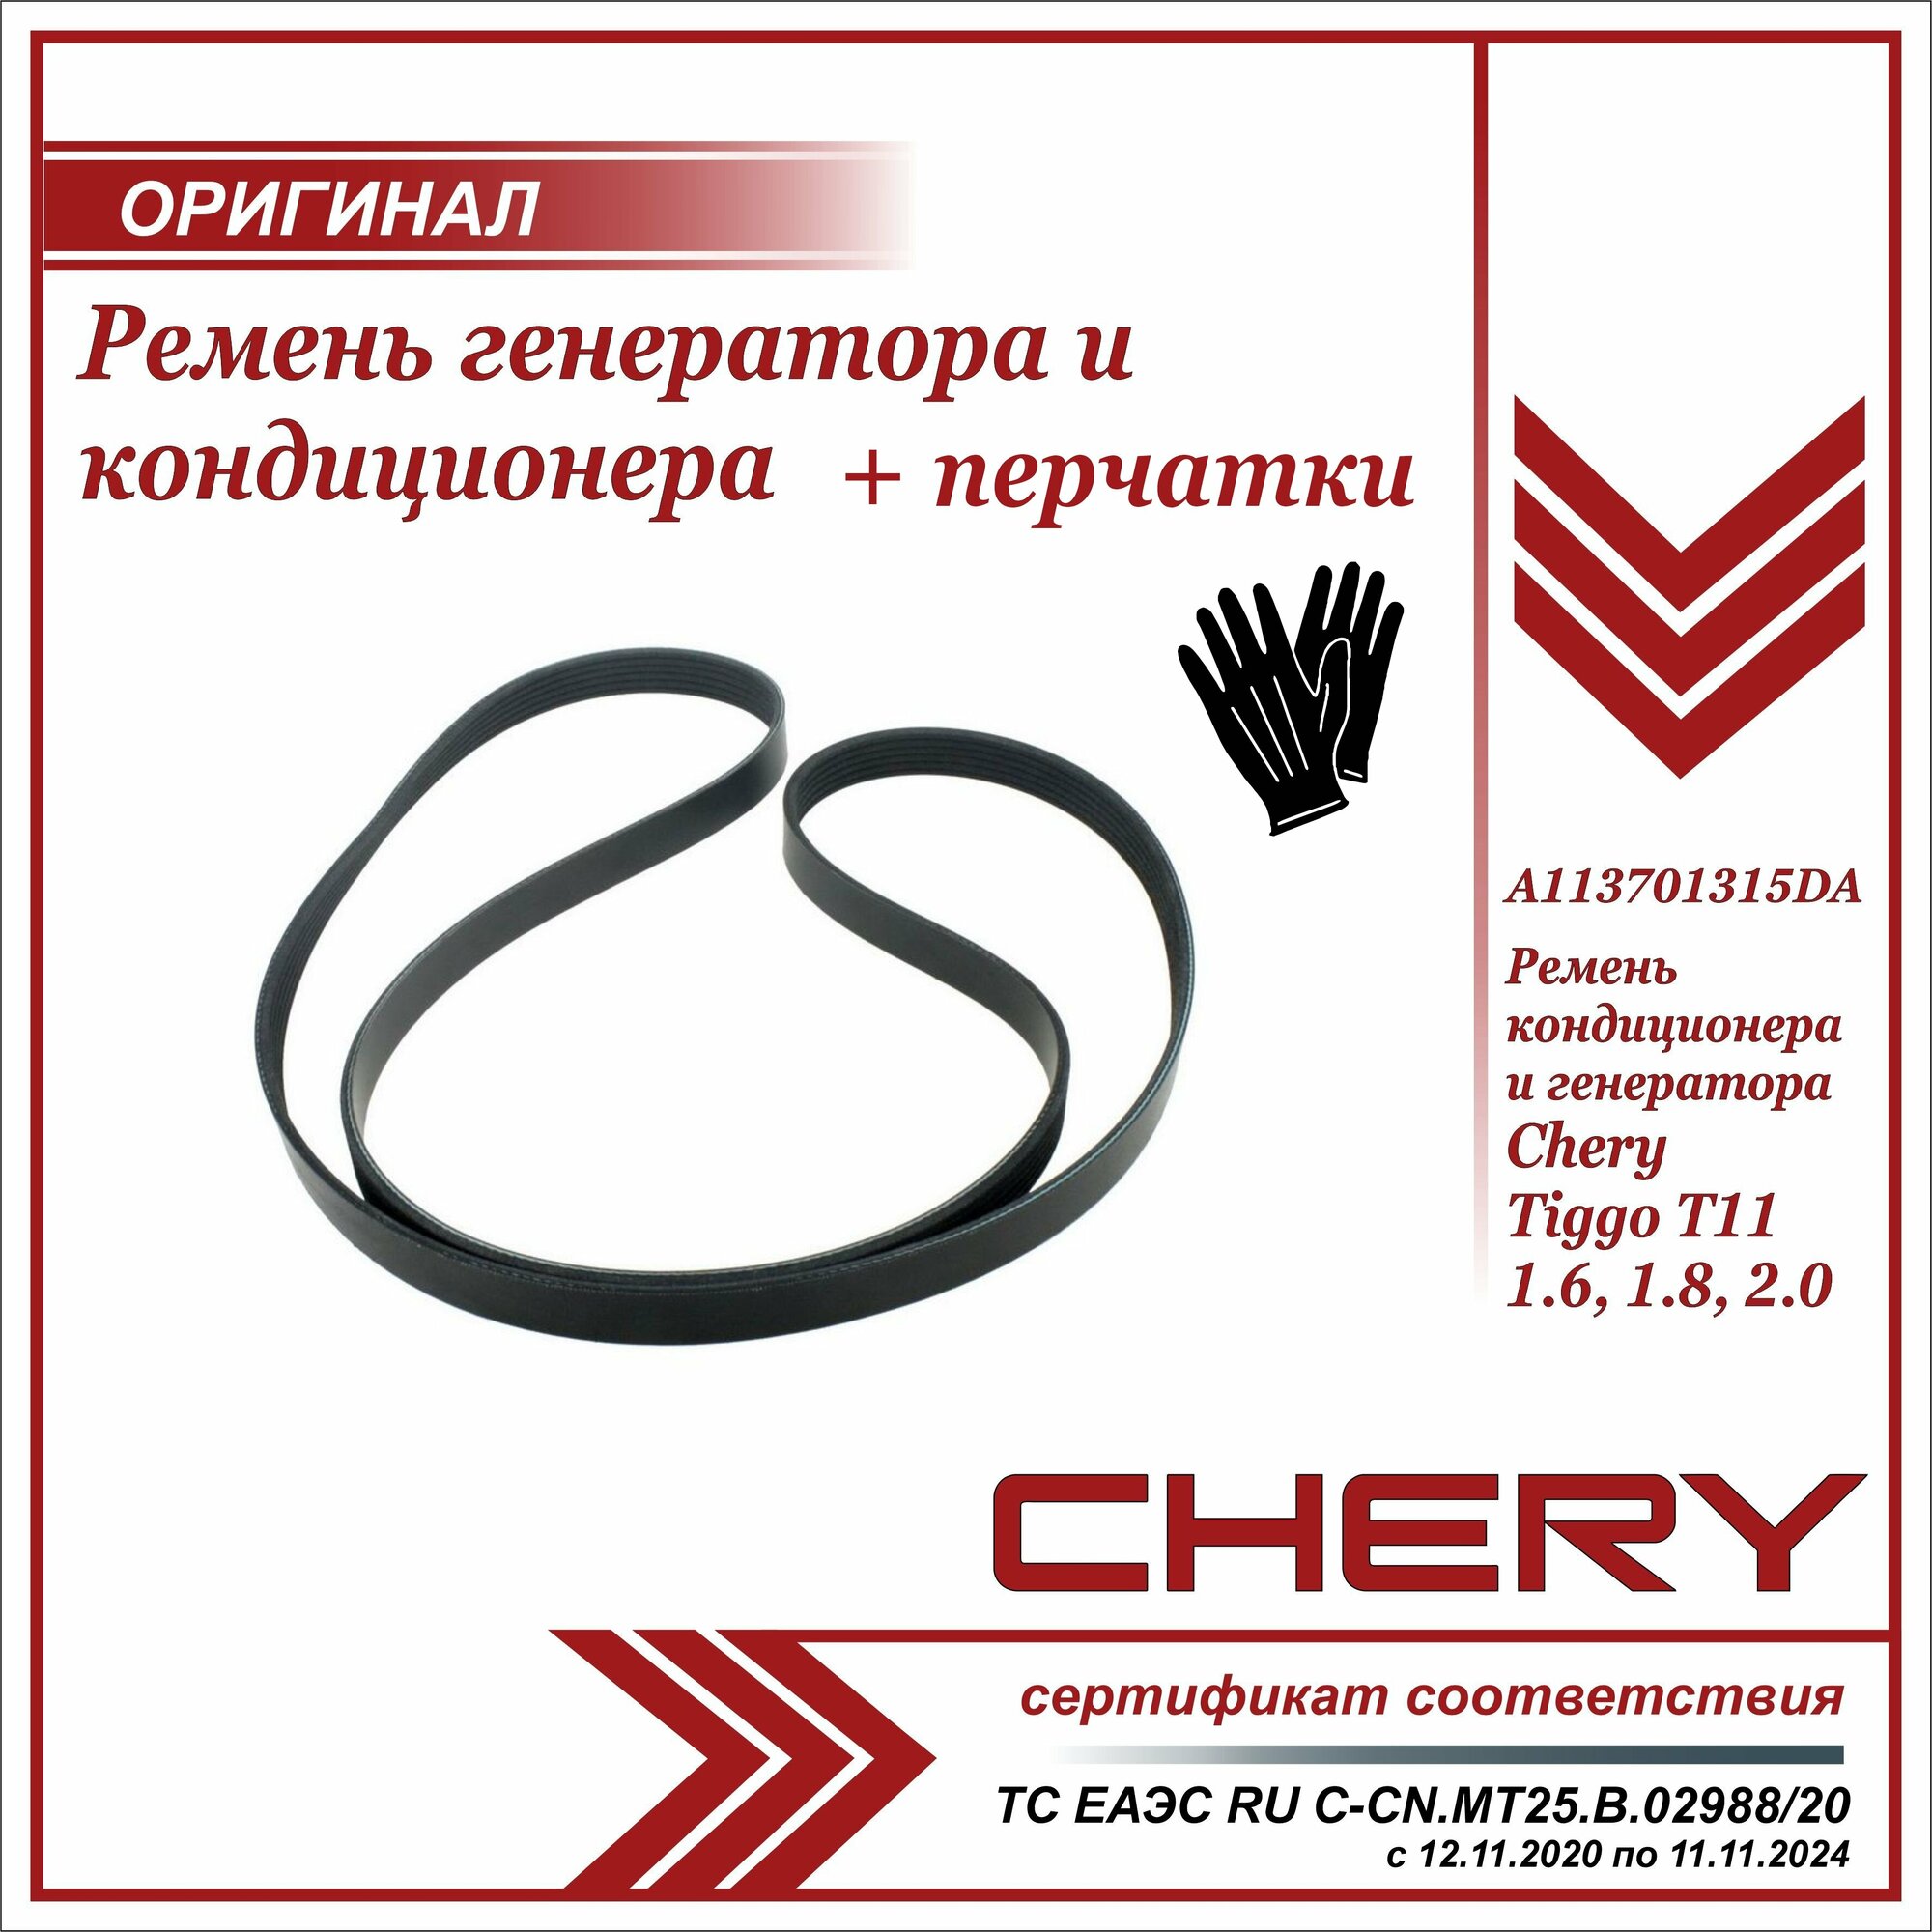 Ремень генератора и кондиционера Чери Тигго Т11 1.6 1.8 2.0 , Chery Tiggo T11 1.6 1.8 2.0 Т11 + пара перчаток в комплекте